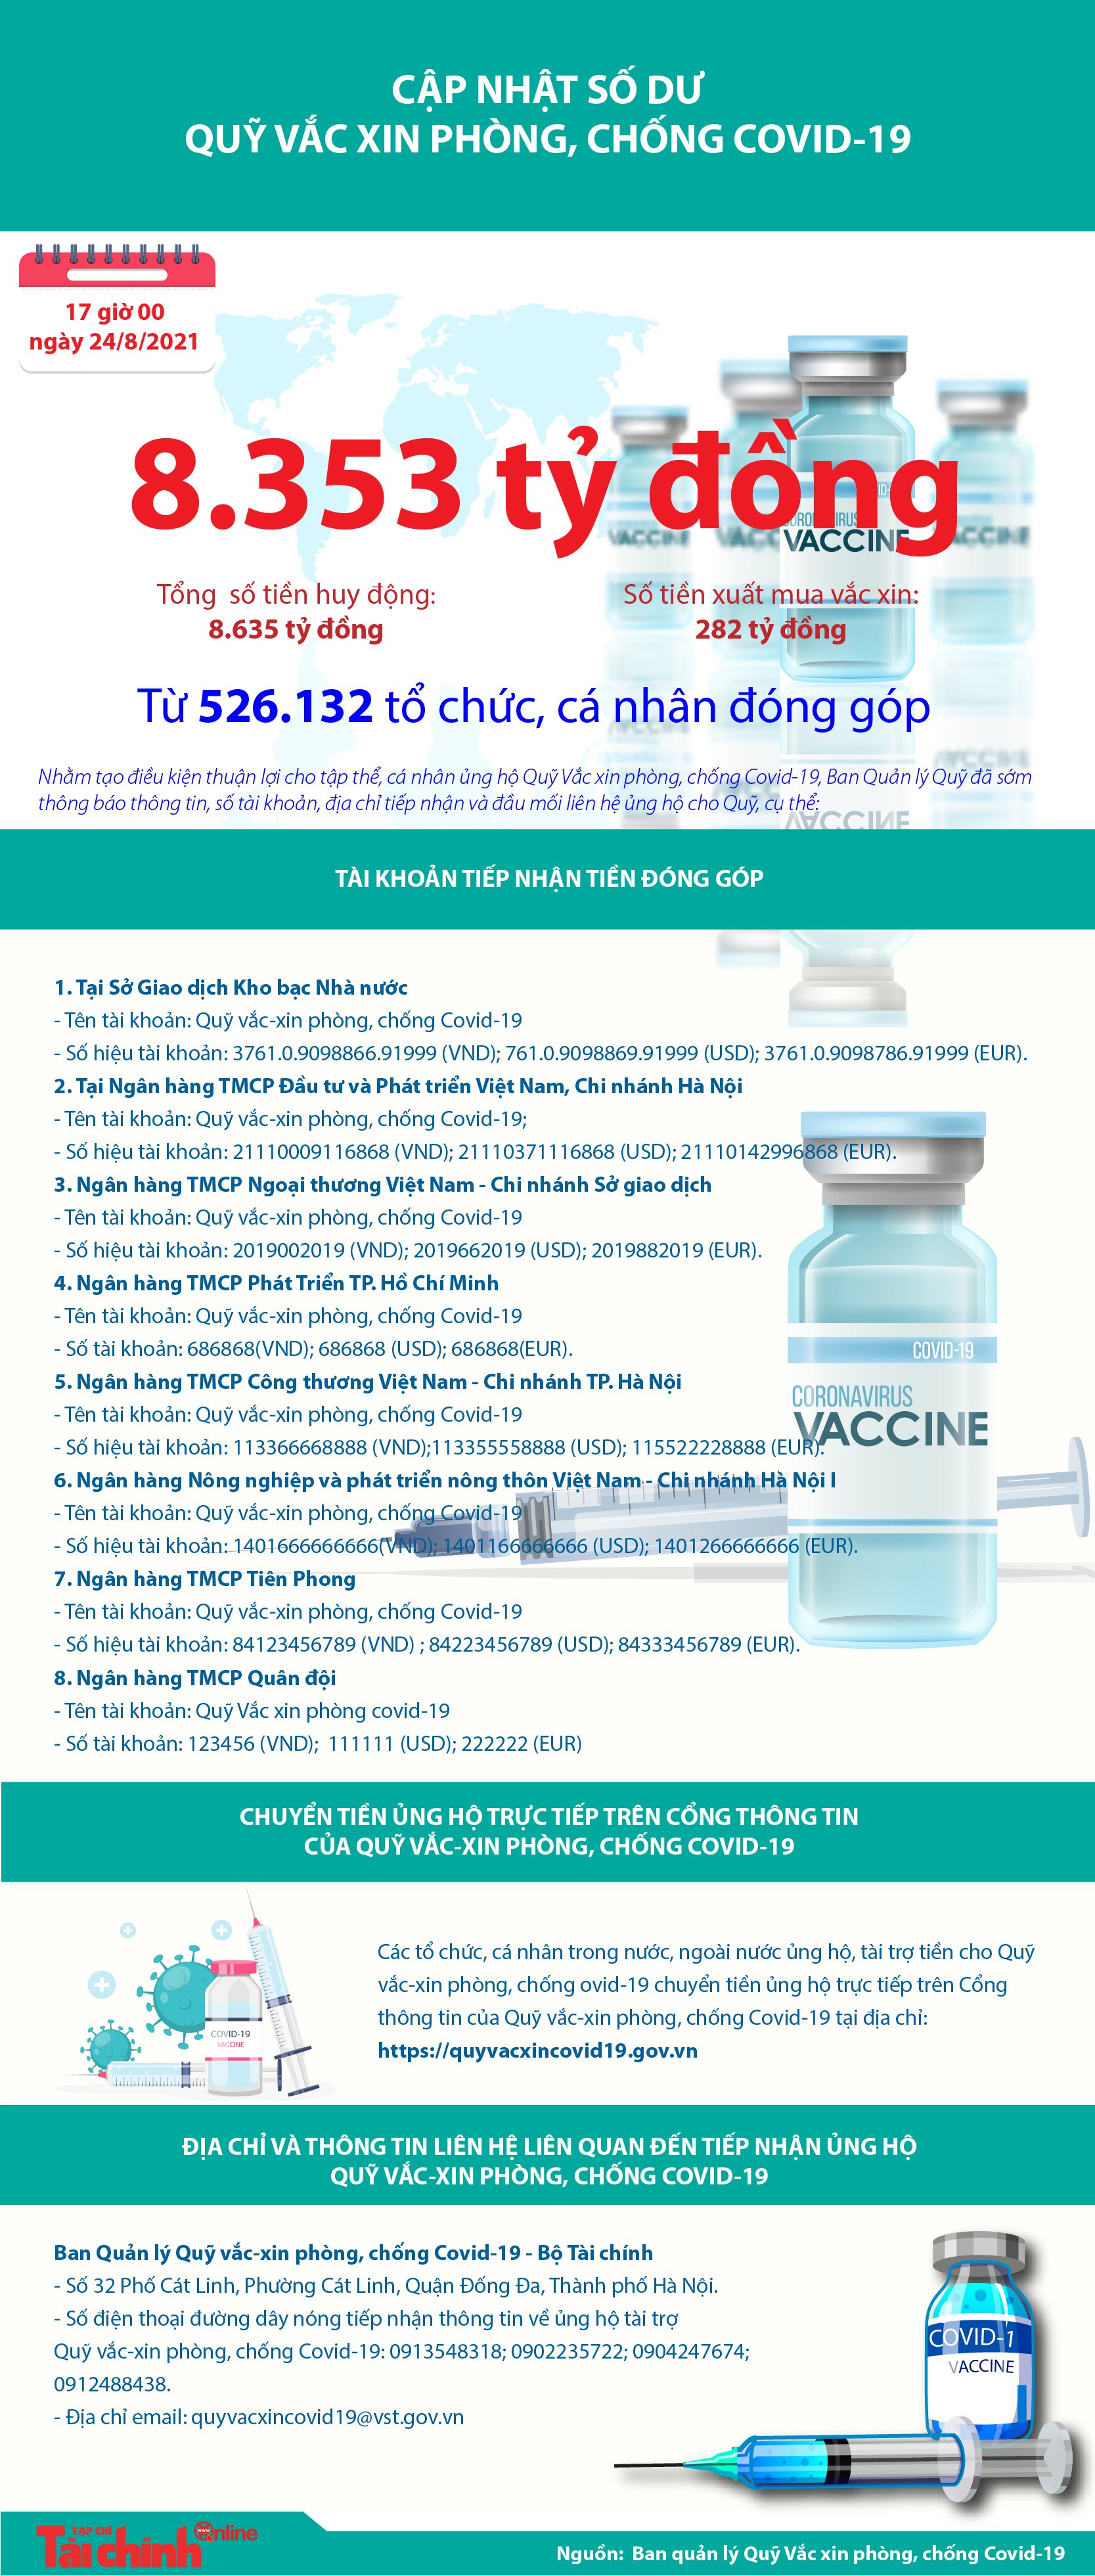 [Infographics] Quỹ Vắc xin phòng, chống COVID-19 còn dư 8.353 tỷ đồng - Ảnh 1